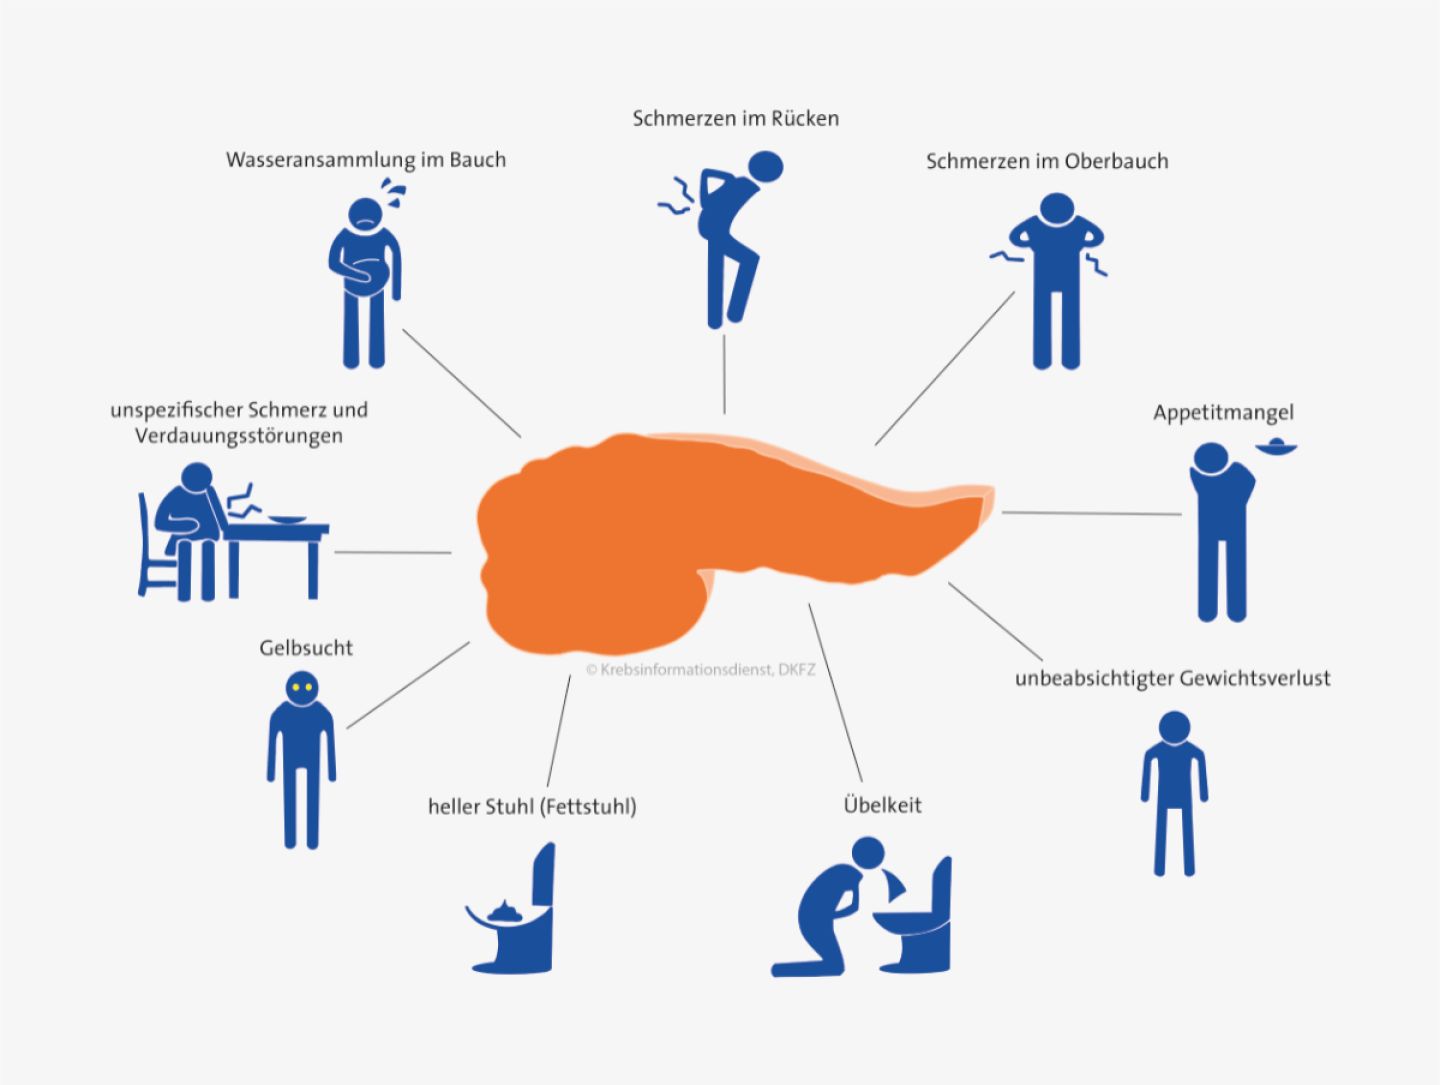 Mindmap verschiedener Beschwerden, die auf Bauchspeichelkrebs hinweisen können. Grafik: Asena Tunali © Krebsinformationsdienst, DKFZ